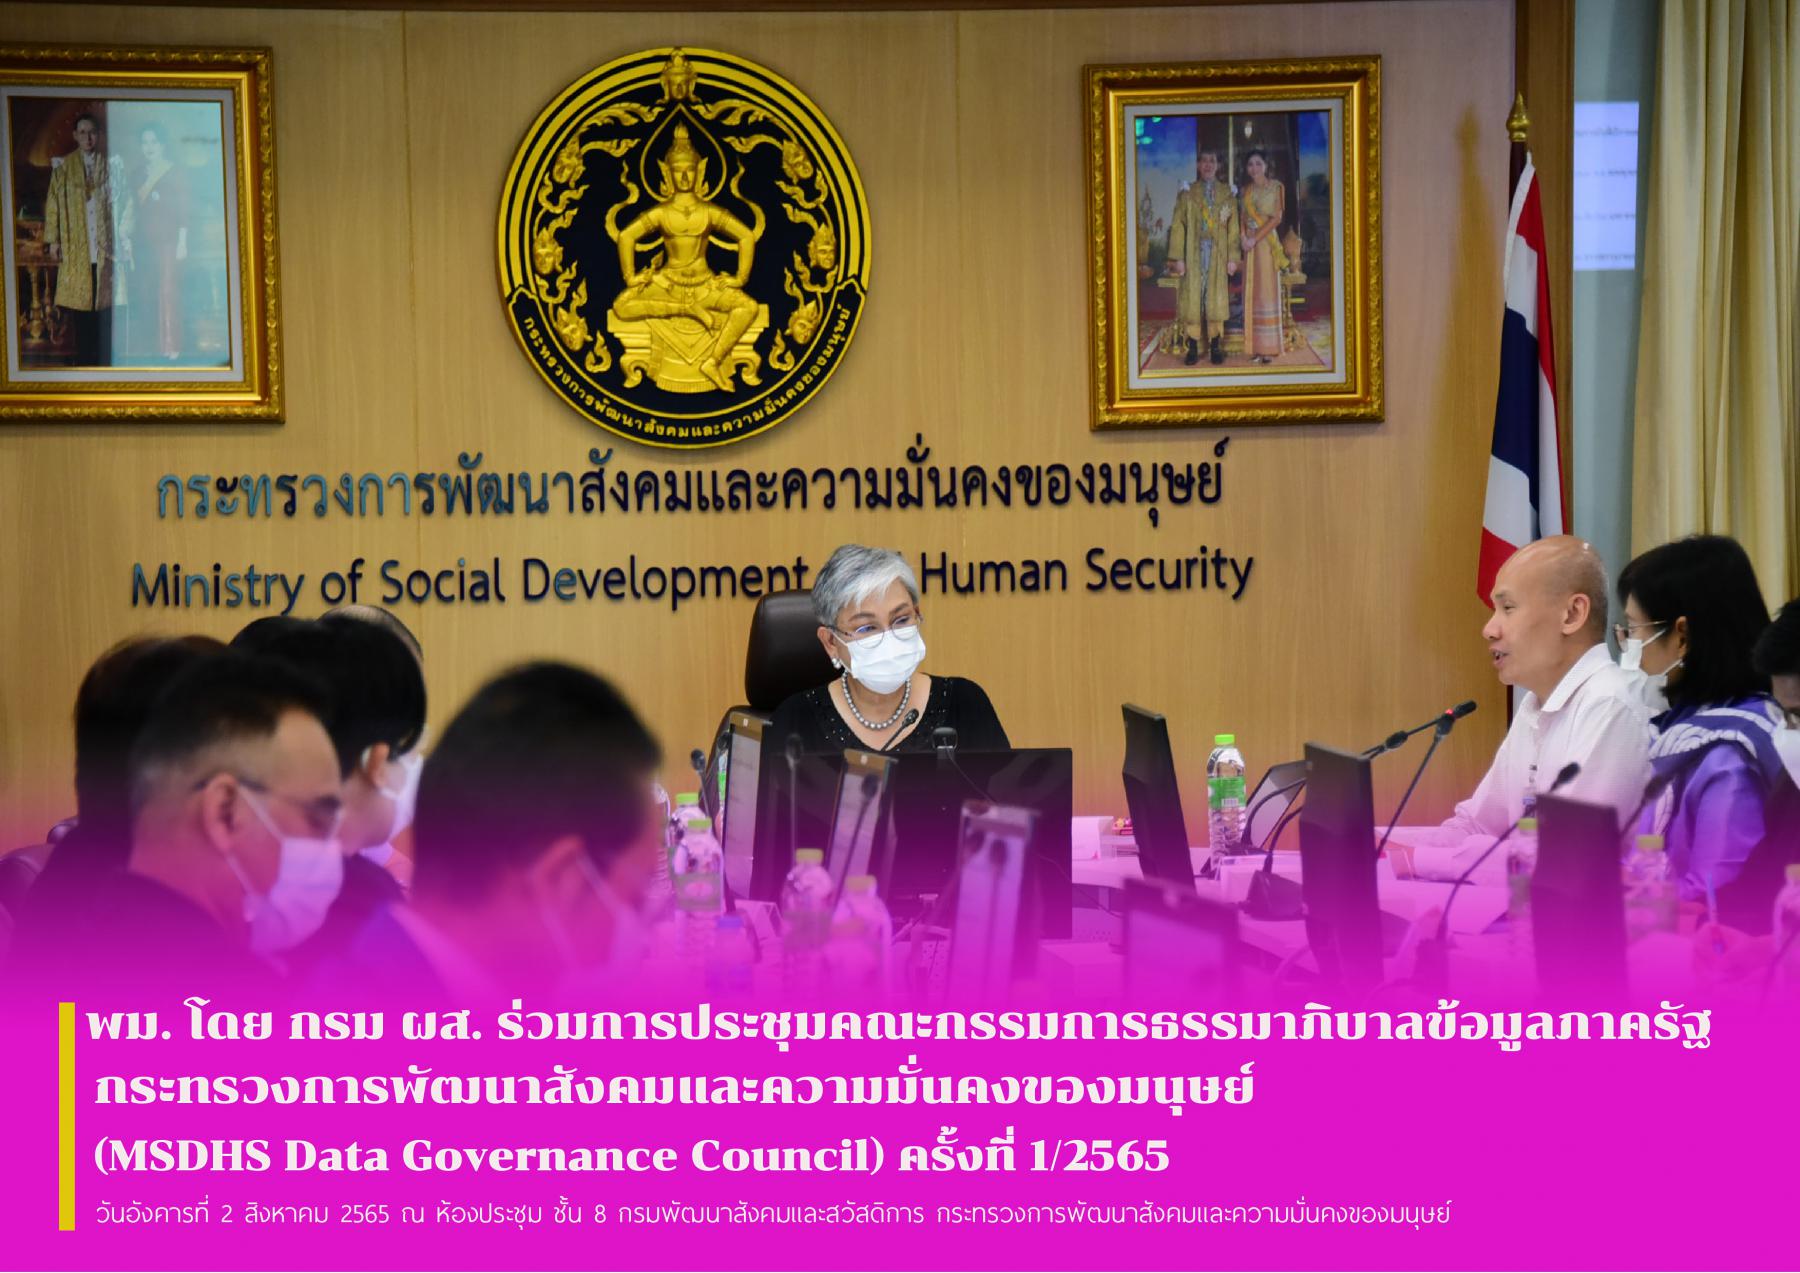 พม. โดย กรม ผส. ร่วมการประชุมคณะกรรมการธรรมาภิบาลข้อมูลภาครัฐ กระทรวงการพัฒนาสังคมและความมั่นคงของมนุษย์ (MSDHS Data Governance Council) ครั้งที่ 1/2565